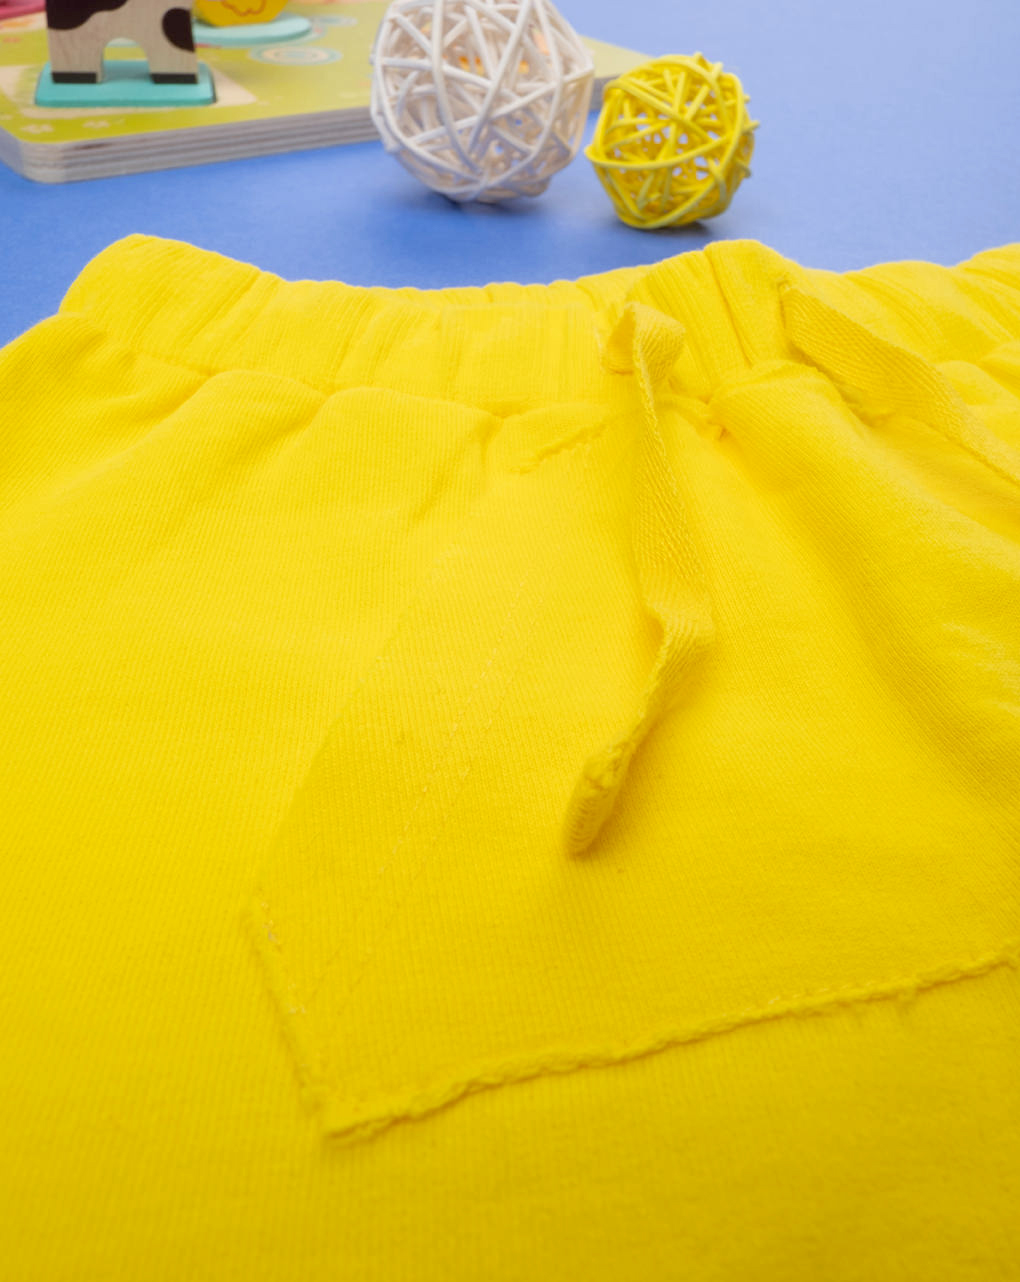 Pantalones cortos amarillos de niño - Prénatal